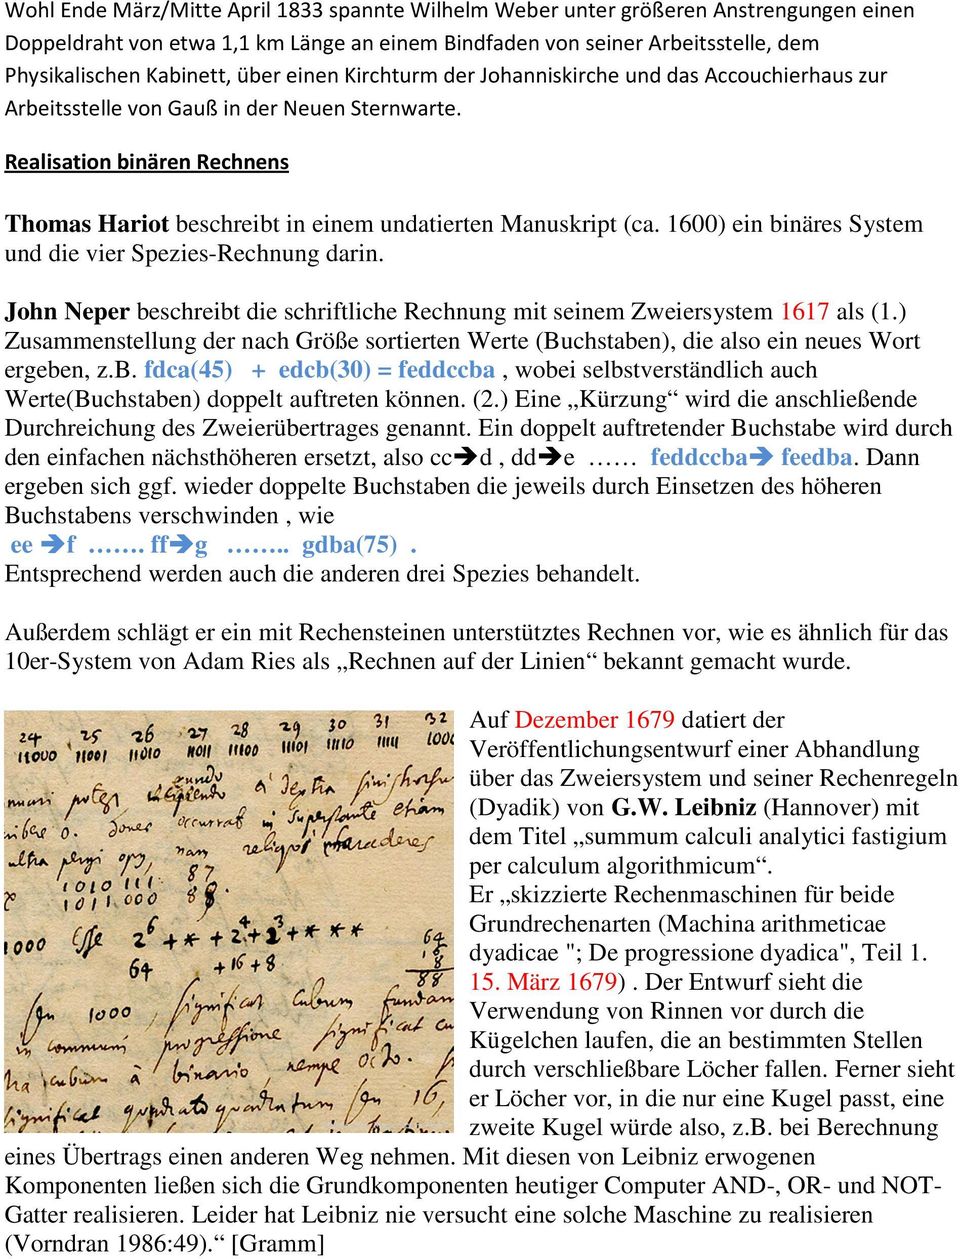 Realisation binären Rechnens Thomas Hariot beschreibt in einem undatierten Manuskript (ca. 1600) ein binäres System und die vier Spezies-Rechnung darin.